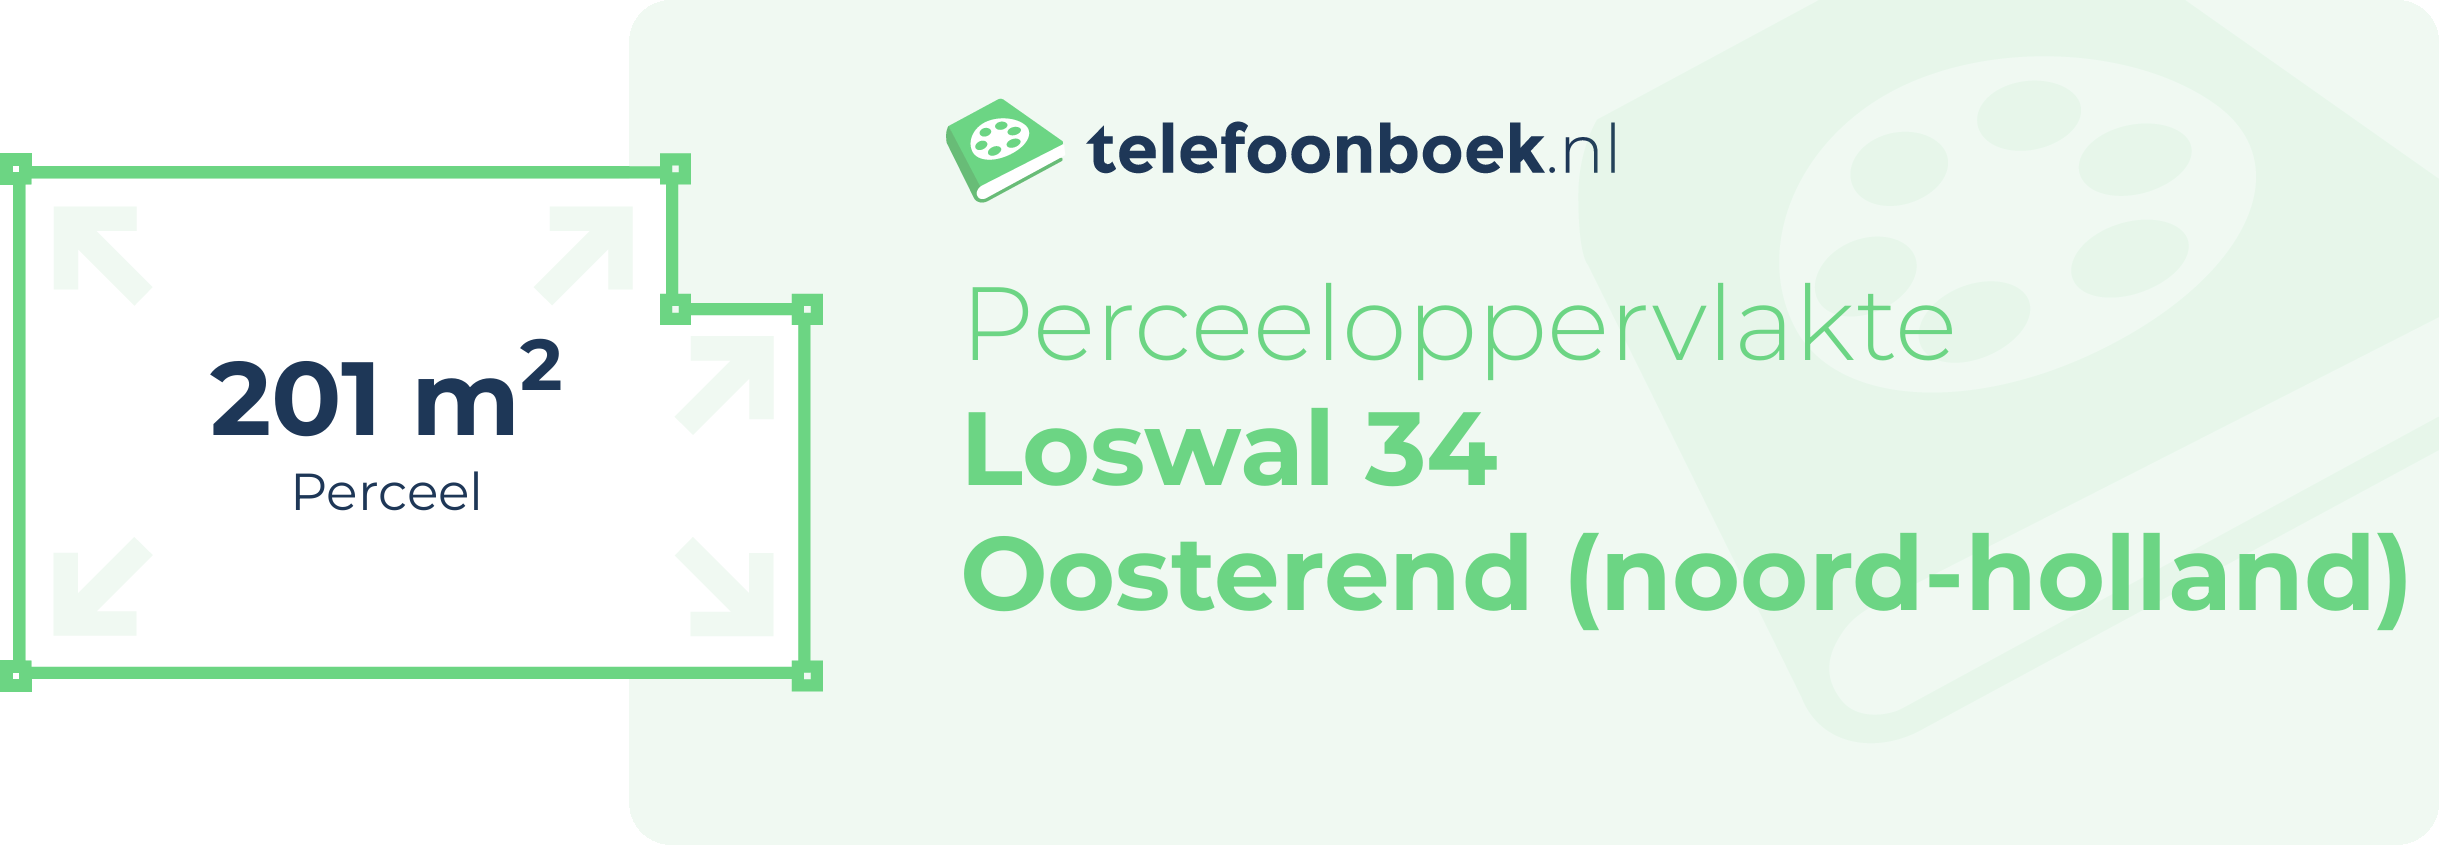 Perceeloppervlakte Loswal 34 Oosterend (Noord-Holland)